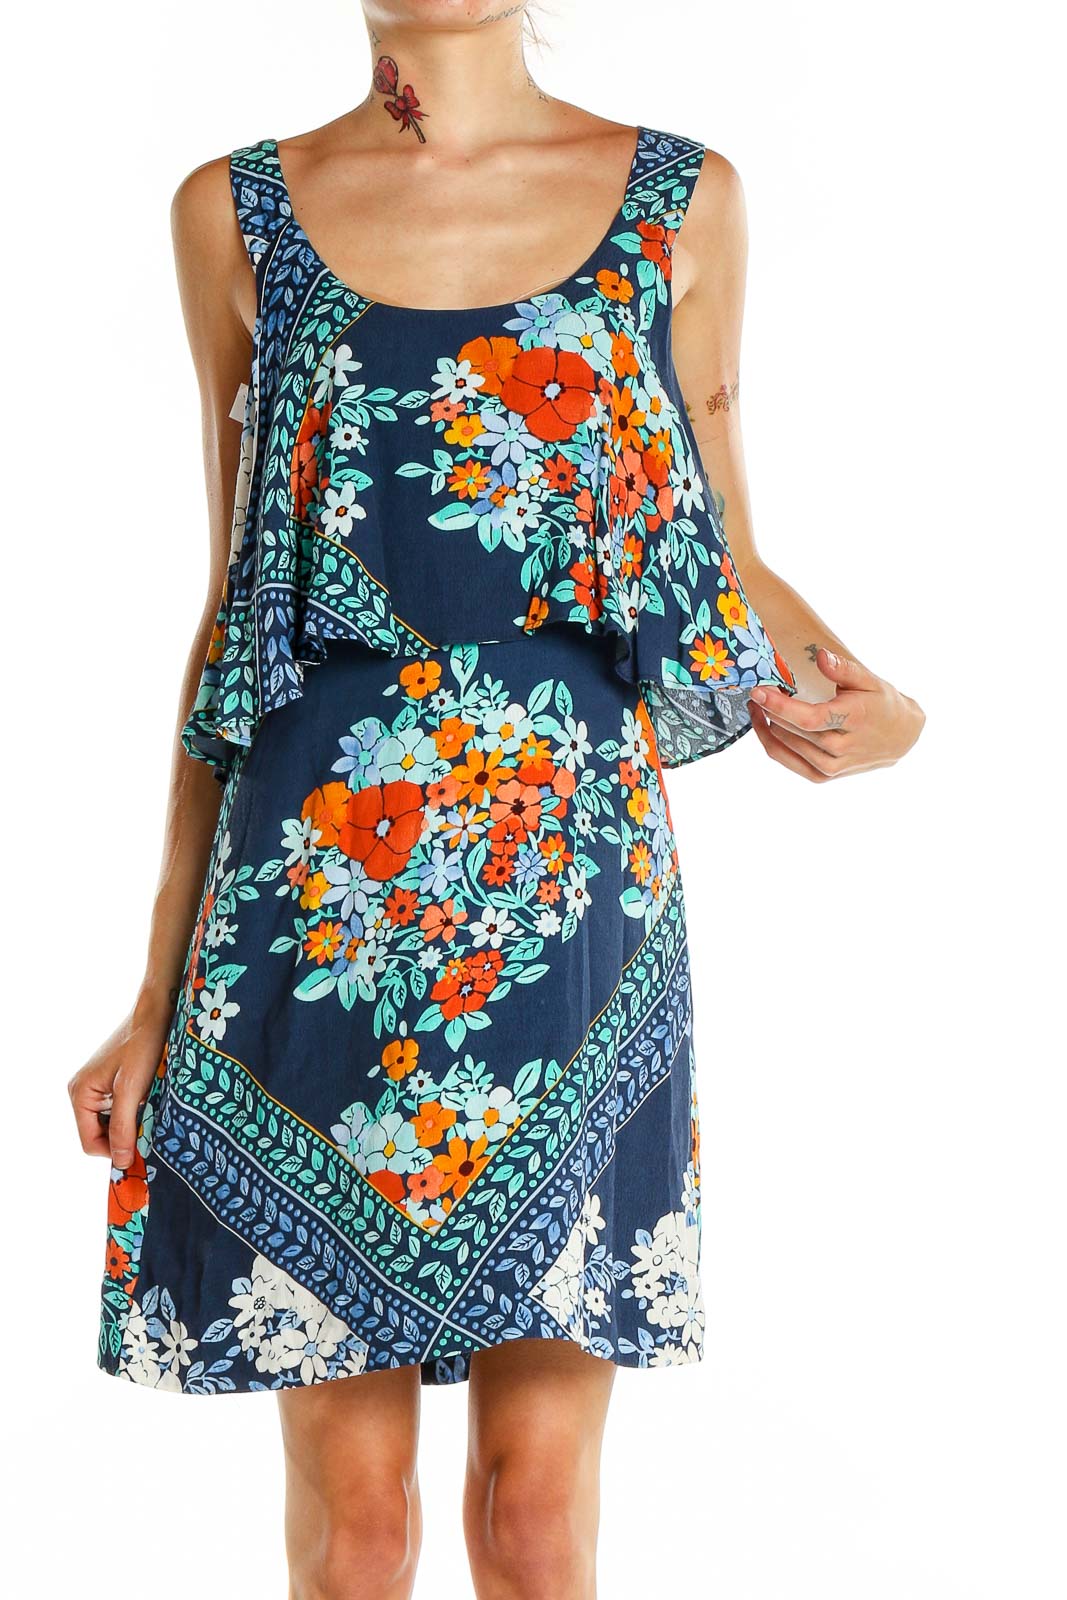 Blue Floral Print Sun Dress Front